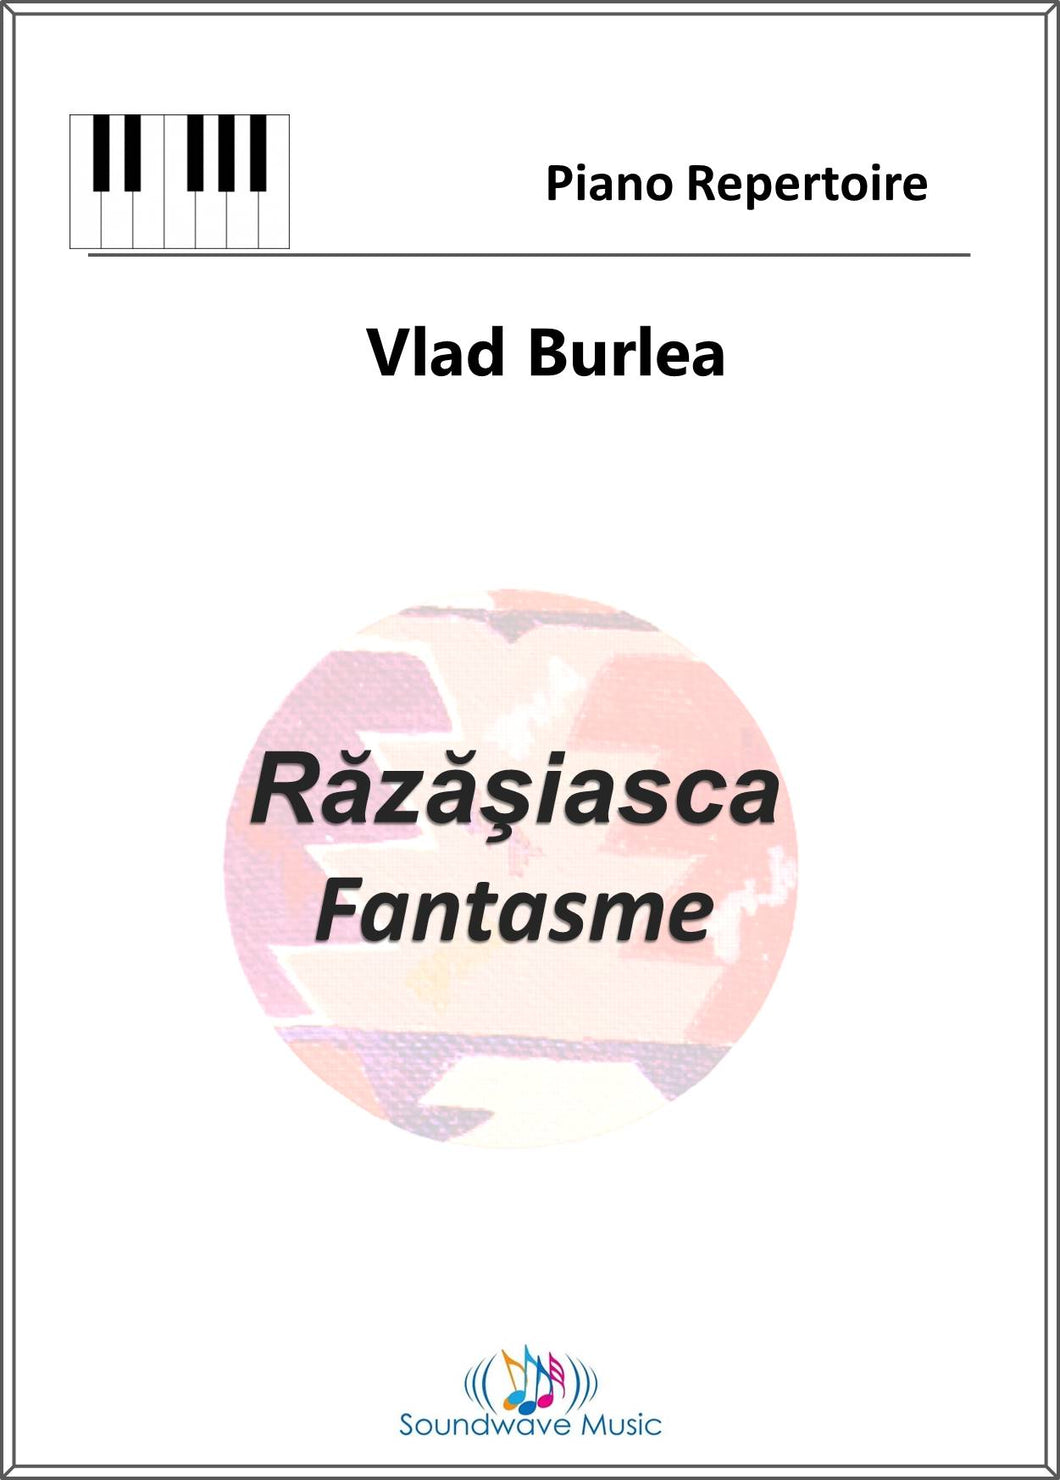 Razasciasca and Fantasme